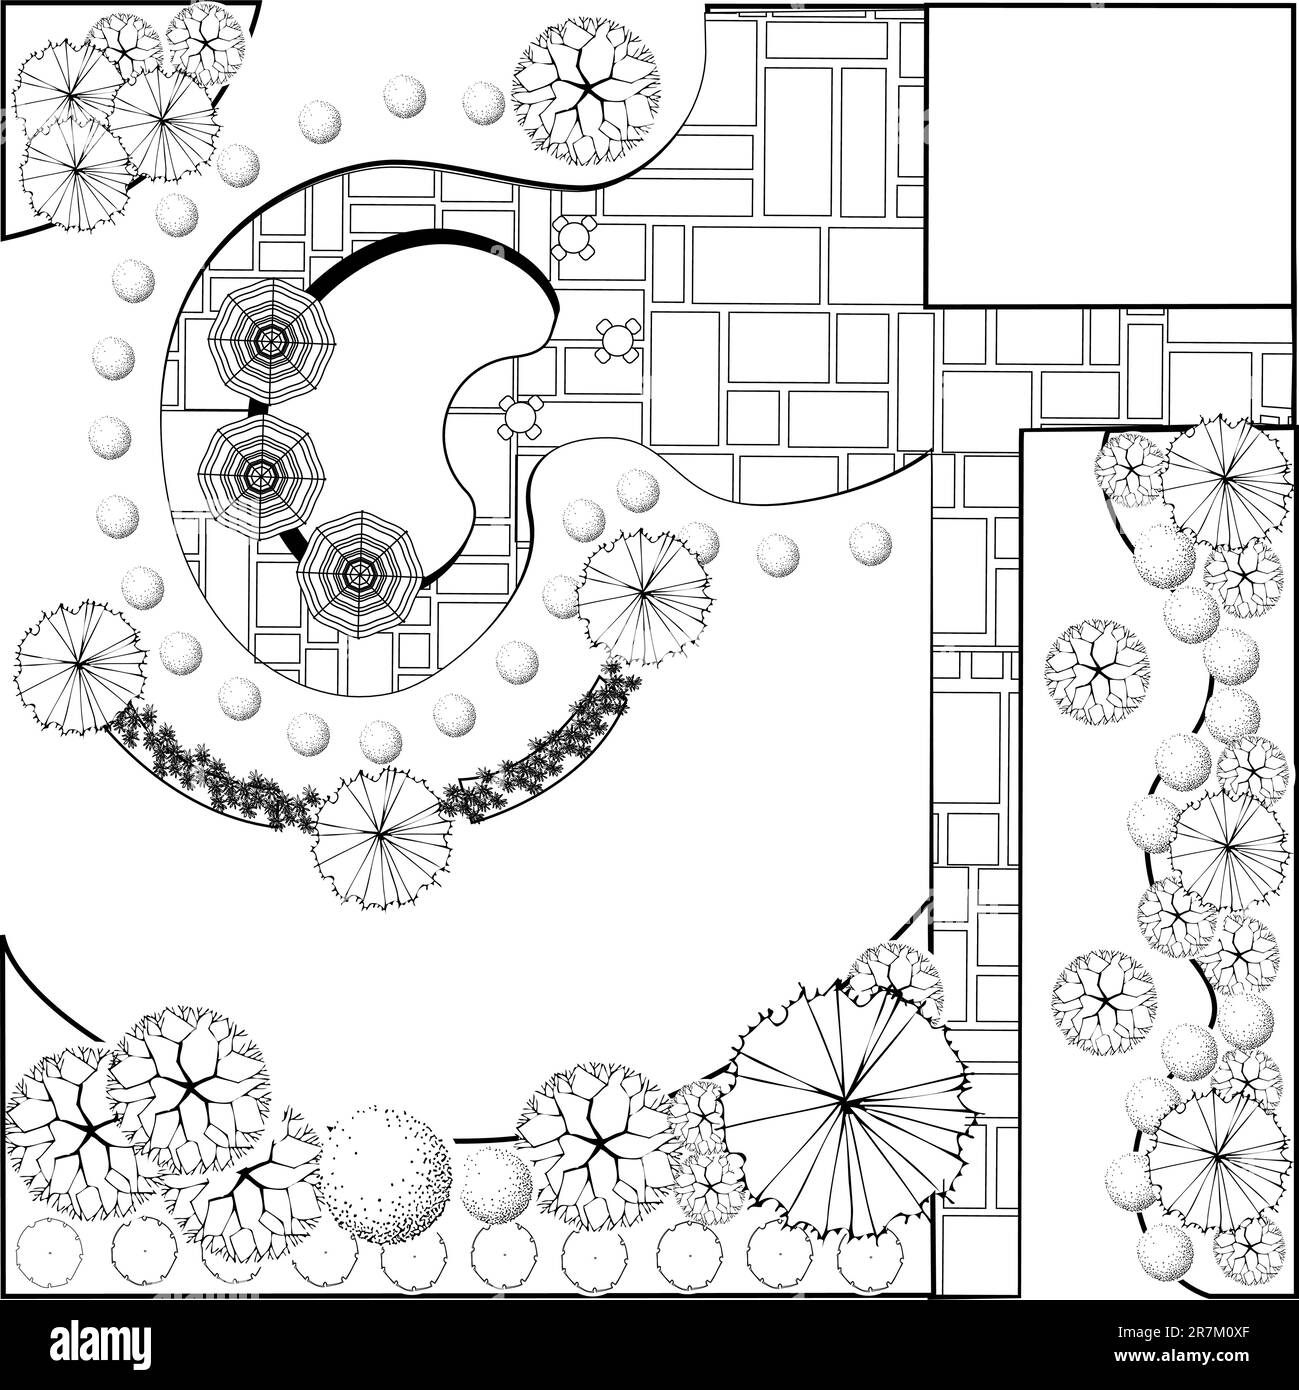 Plan de paysage et de jardin Illustration de Vecteur